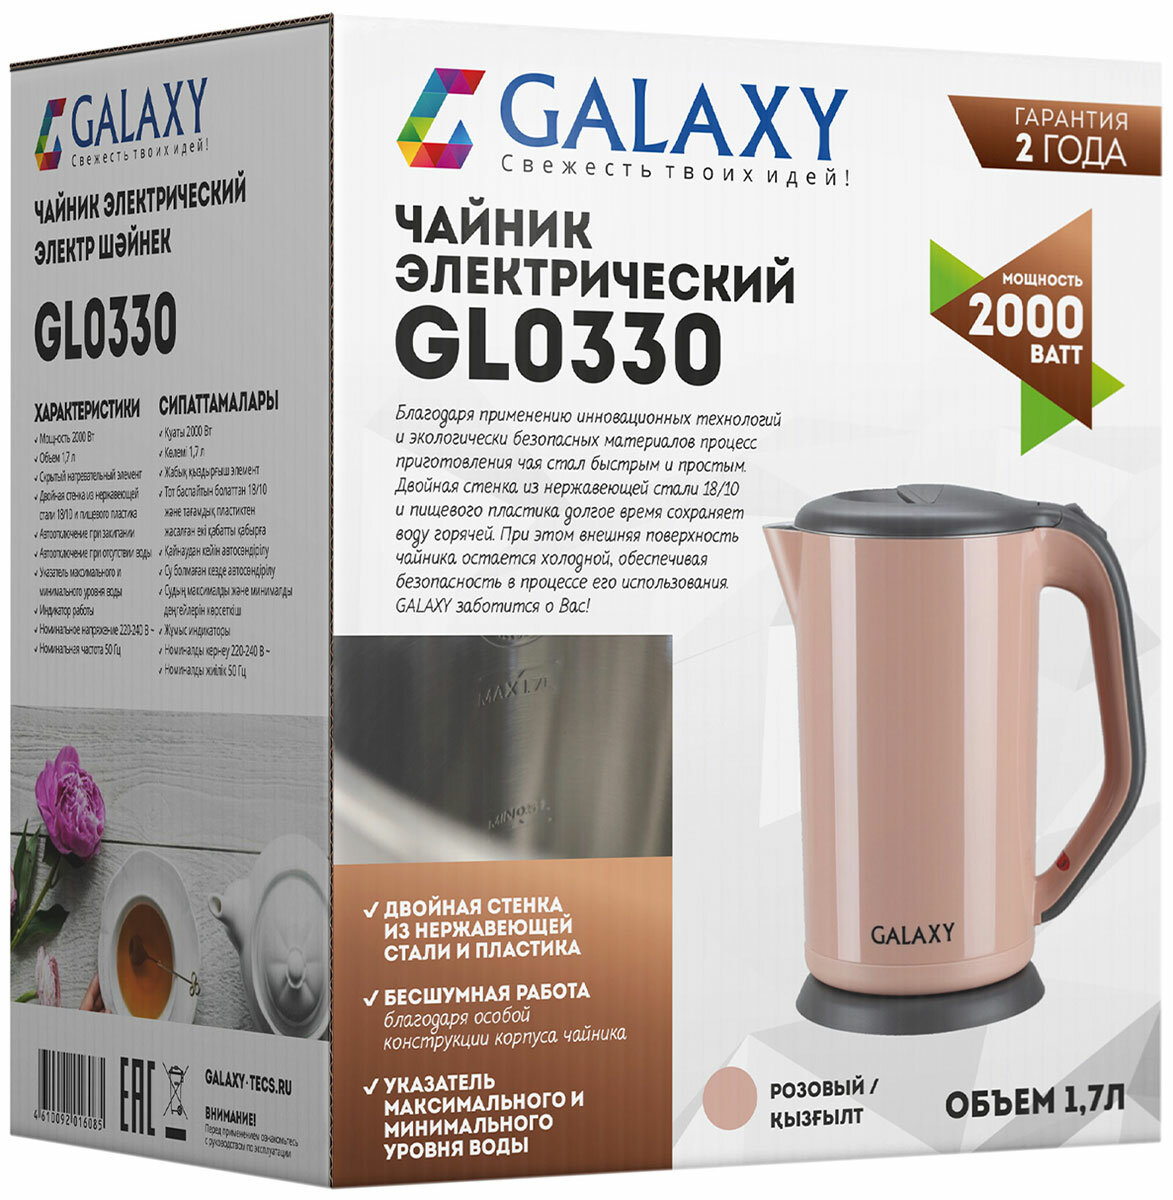 Чайник электрический Galaxy GL 0330, розовый